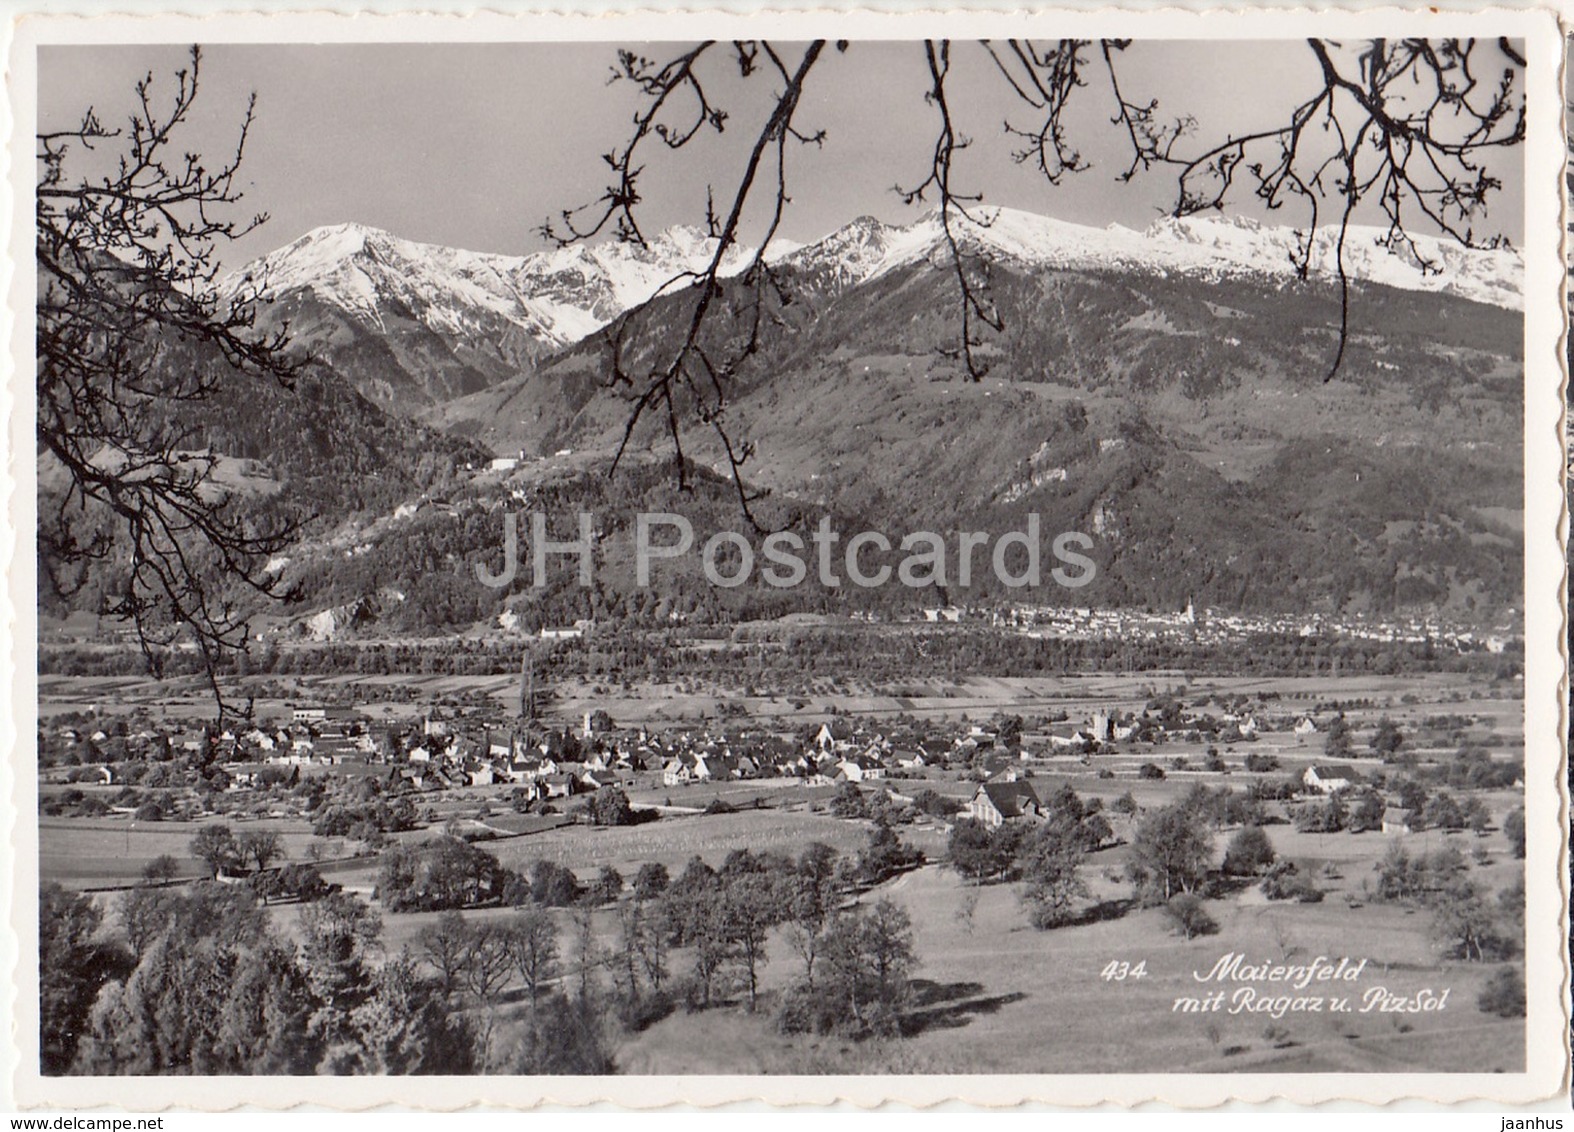 Maienfeldmit Ragaz Und Piz-Sol - 434 - Switzerland - Old Postcard - Unused - Maienfeld